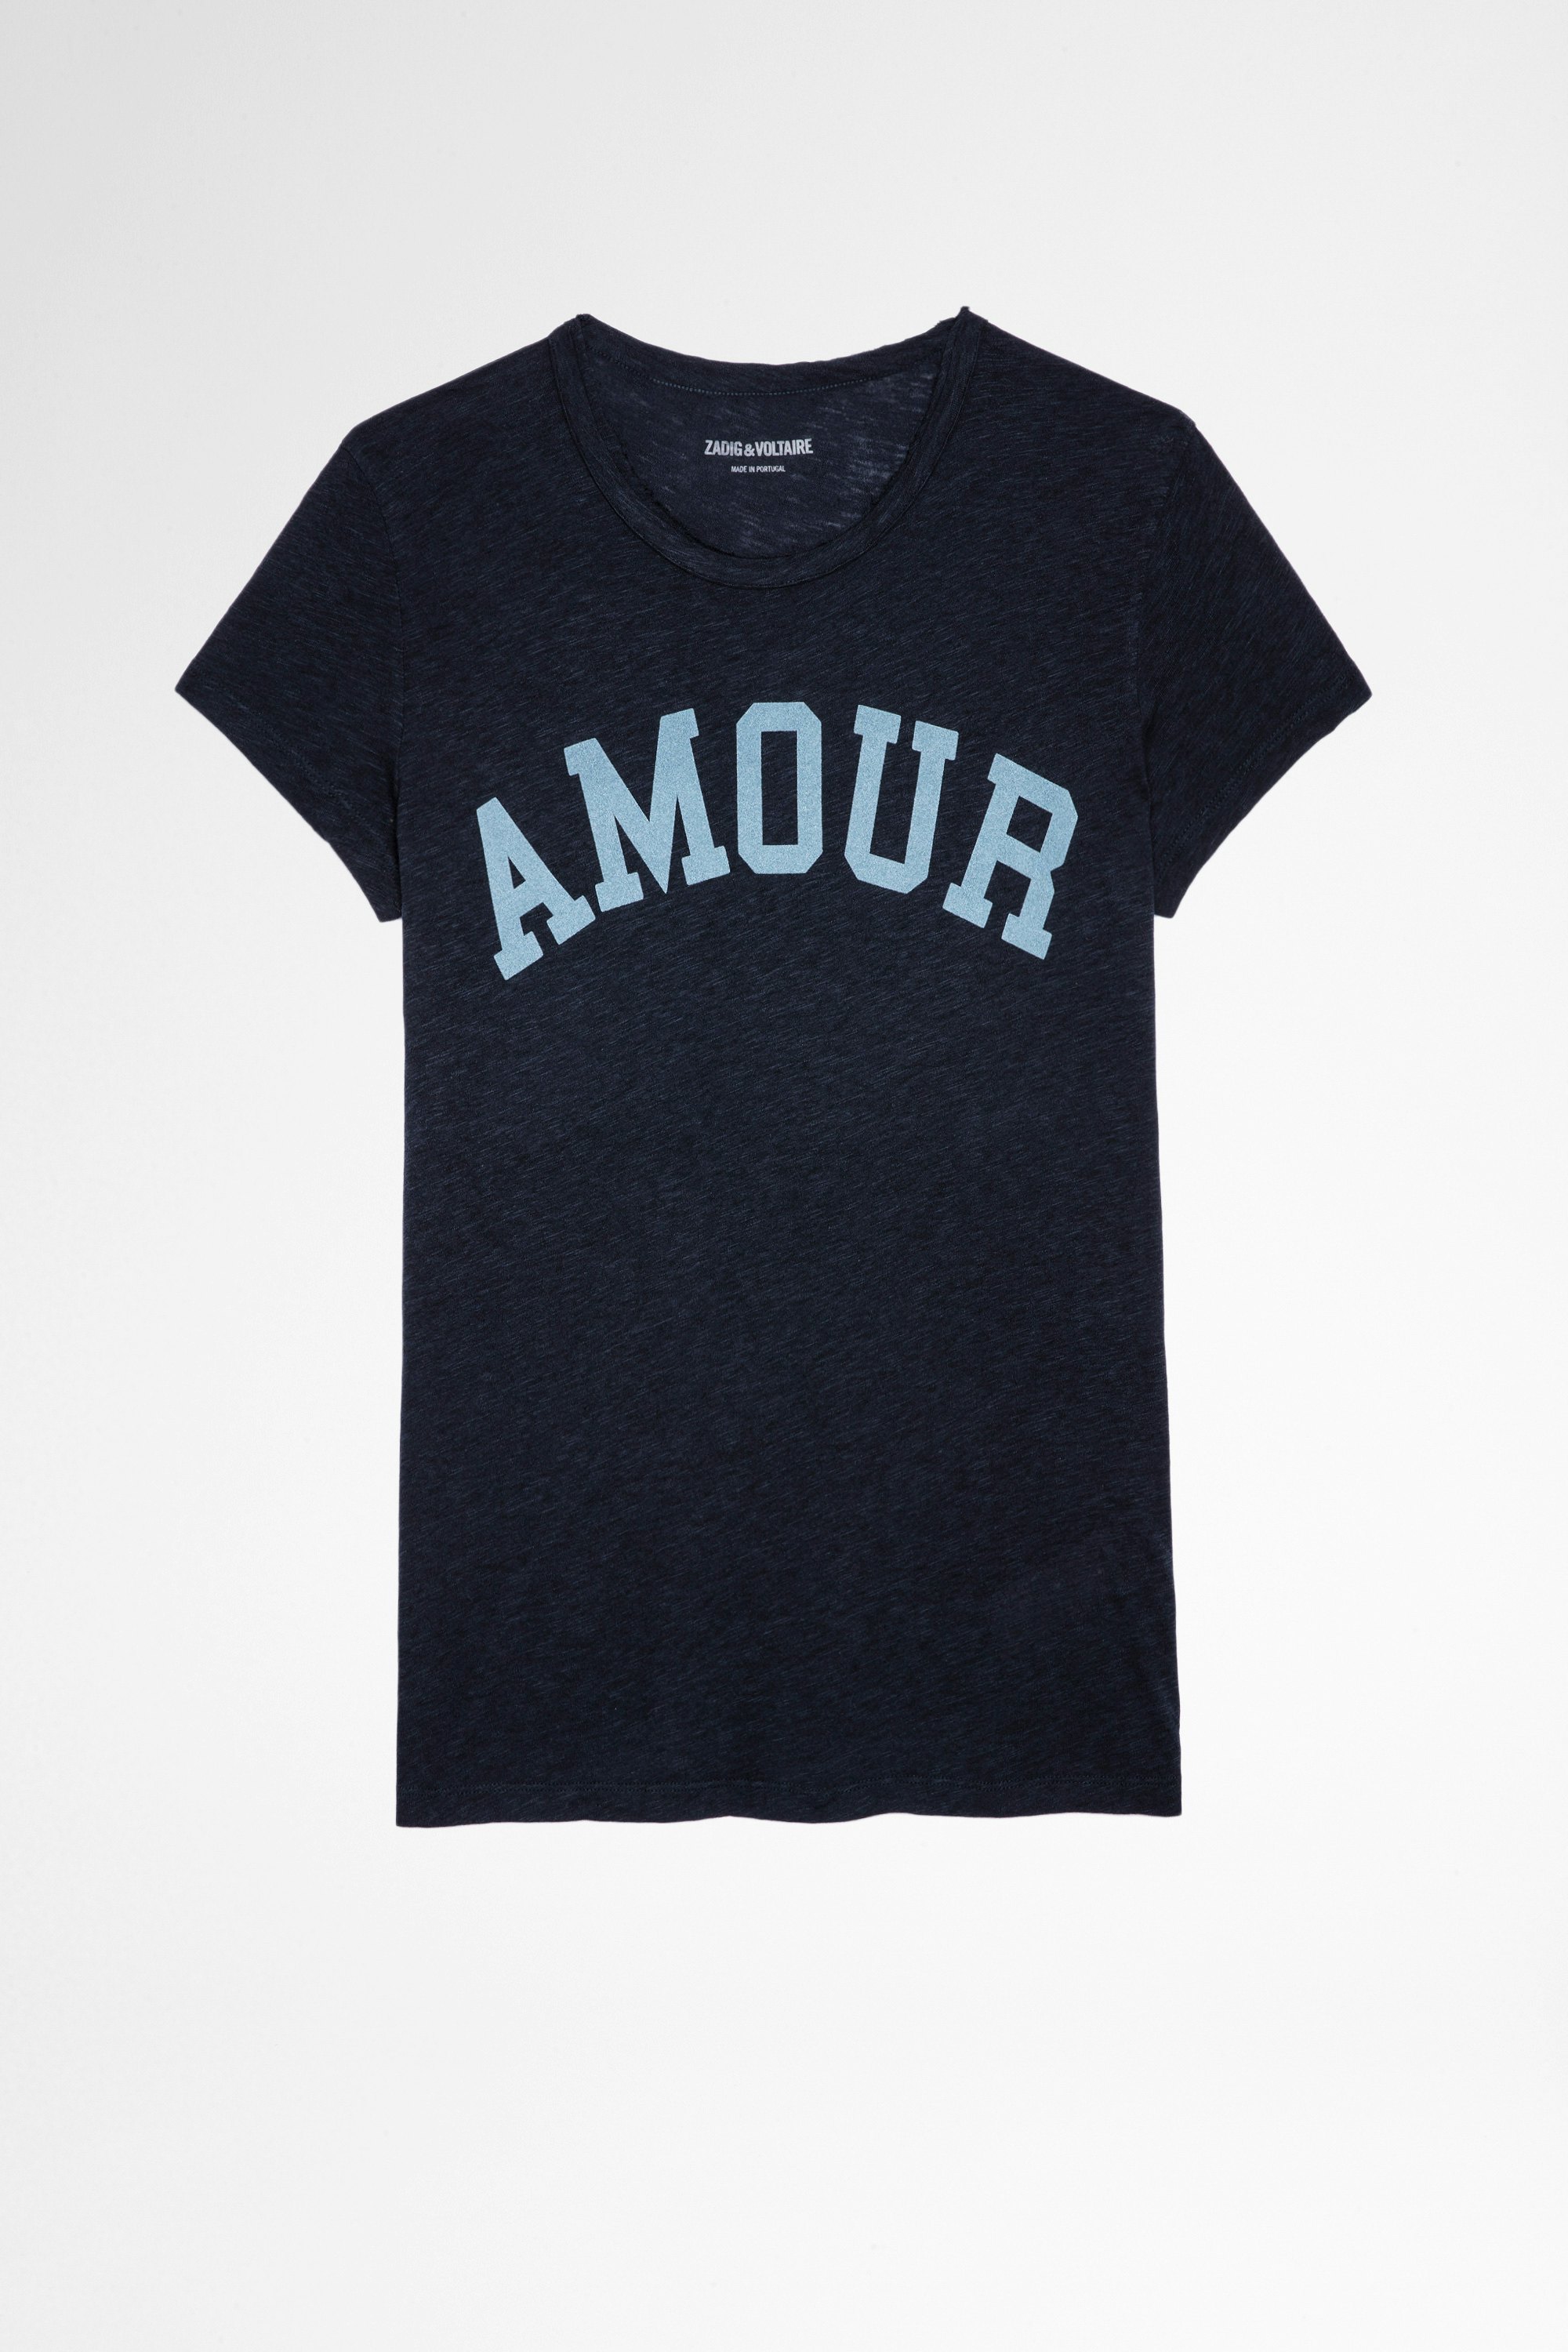 Camiseta Walk Amour Camiseta azul marino de algodón y viscosa para mujer 